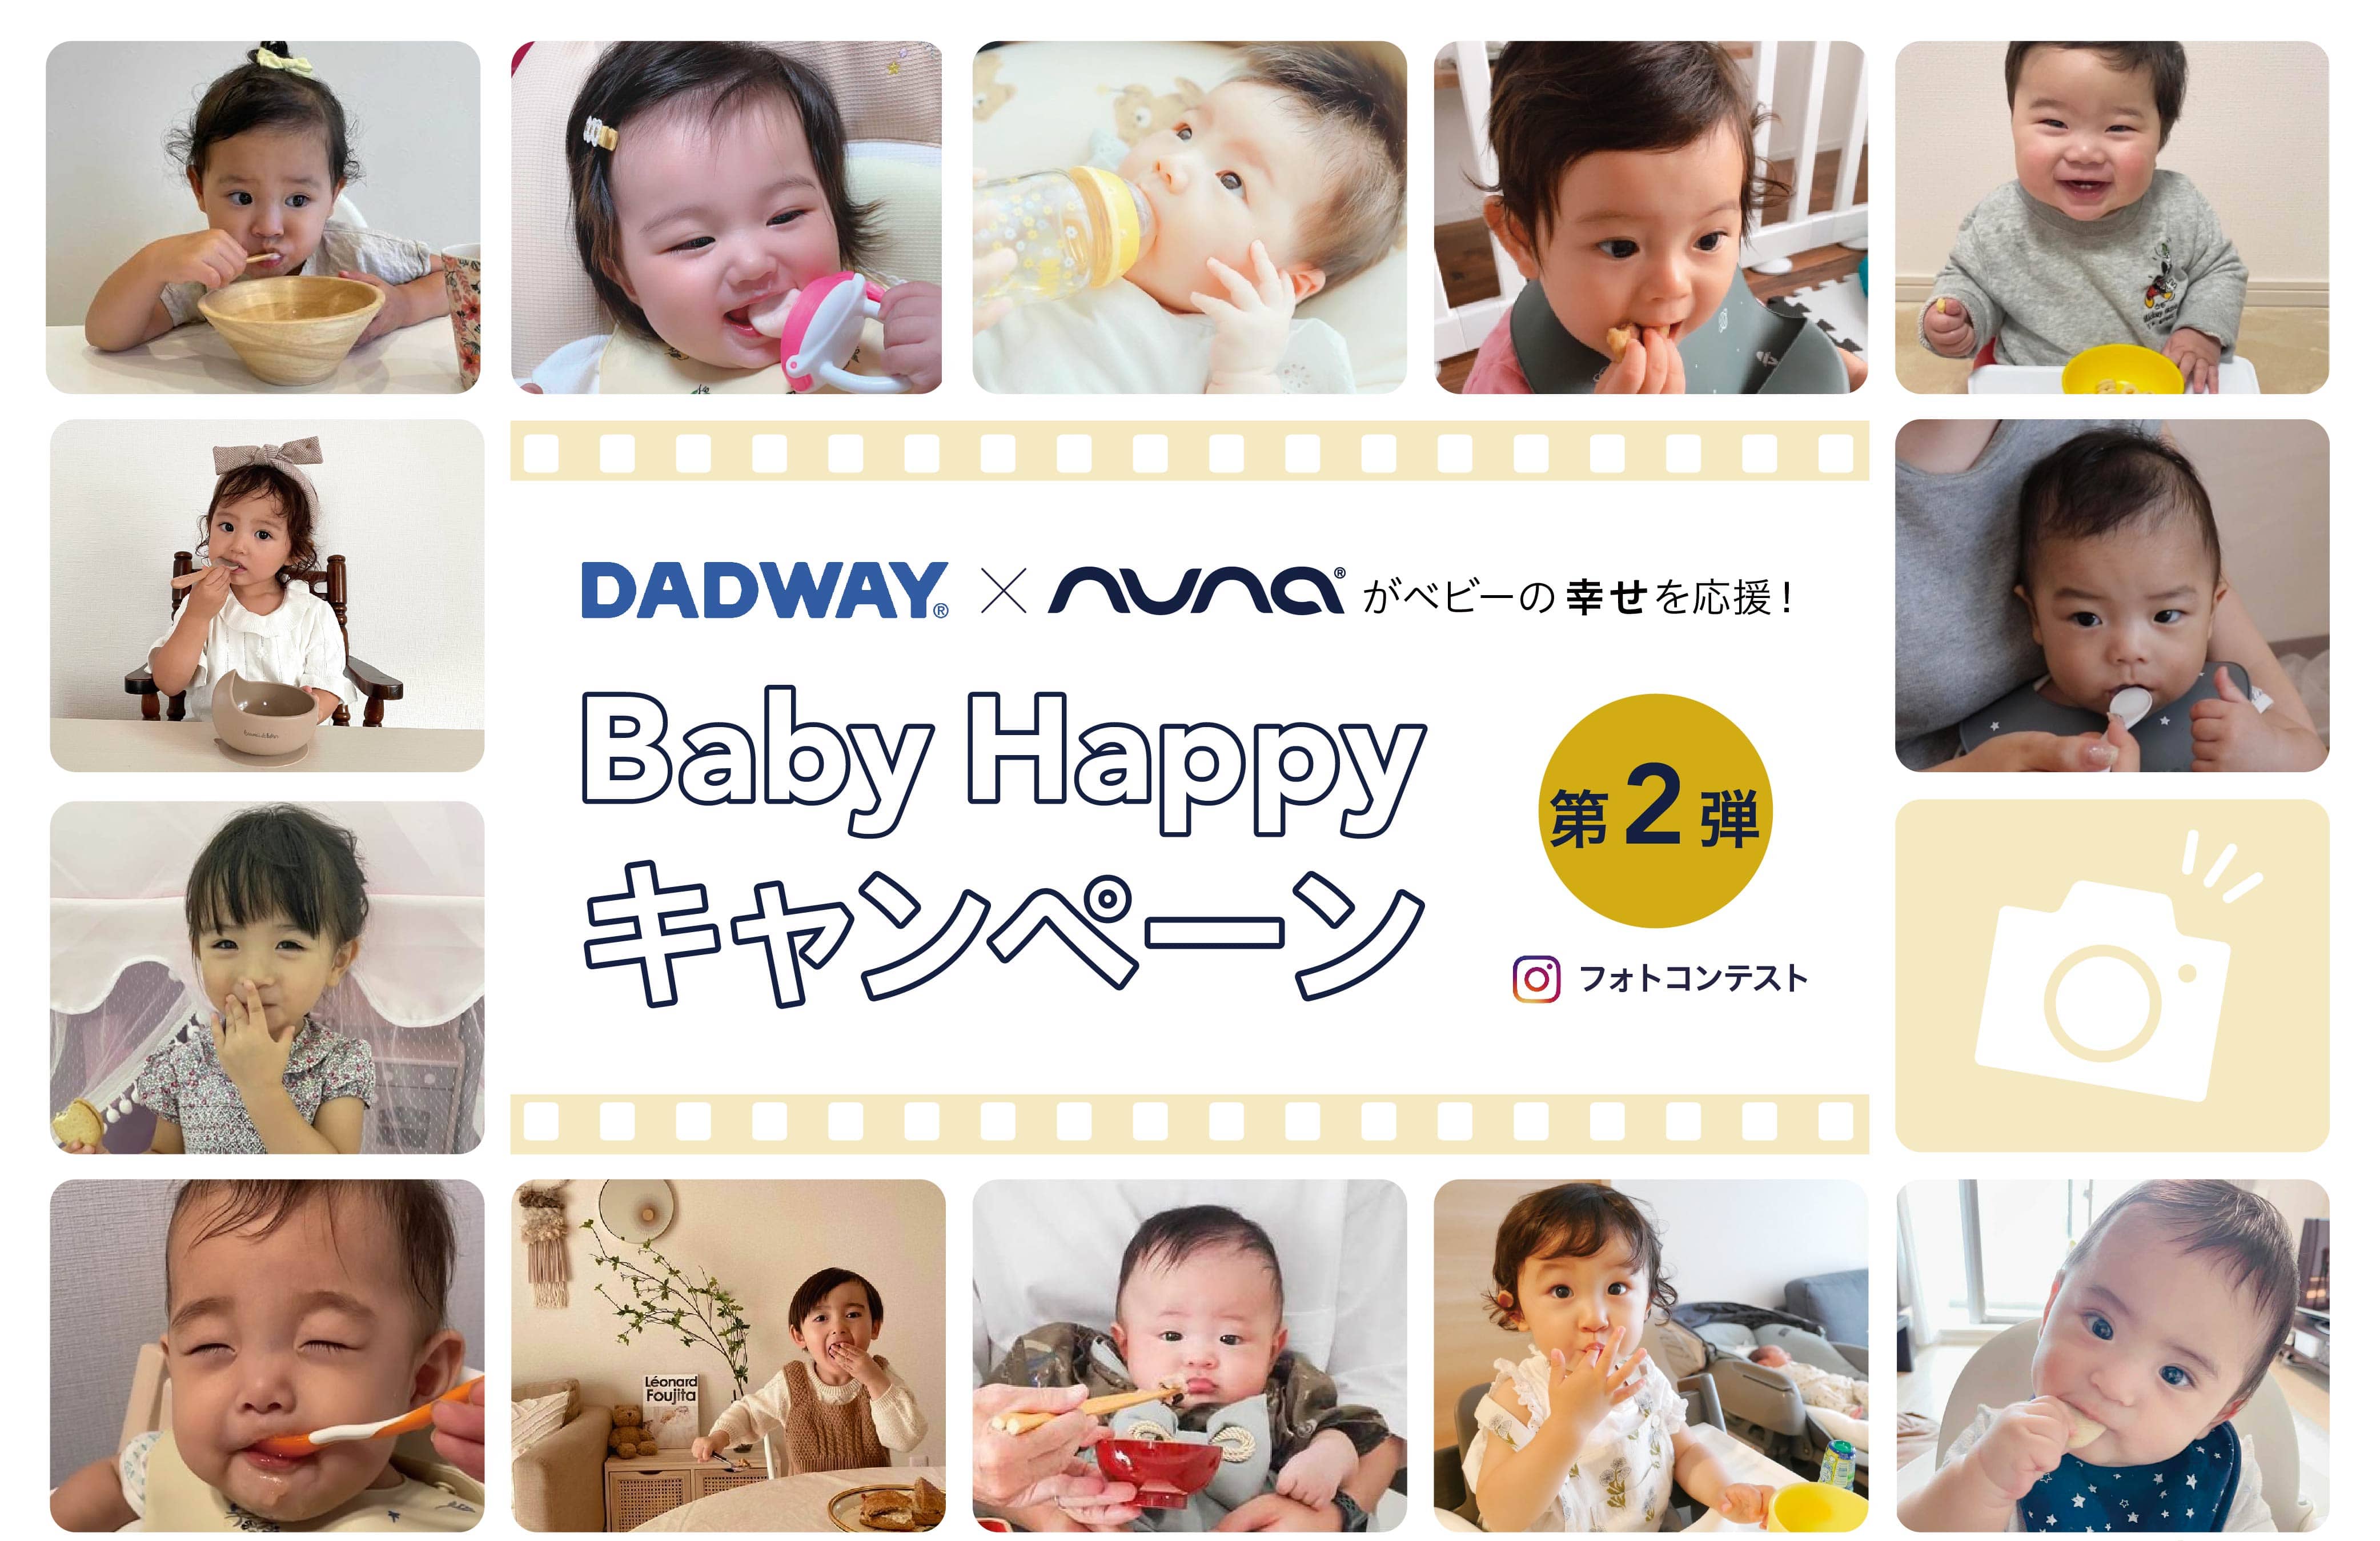 DADWAY×nuna Baby Happyキャンペーン